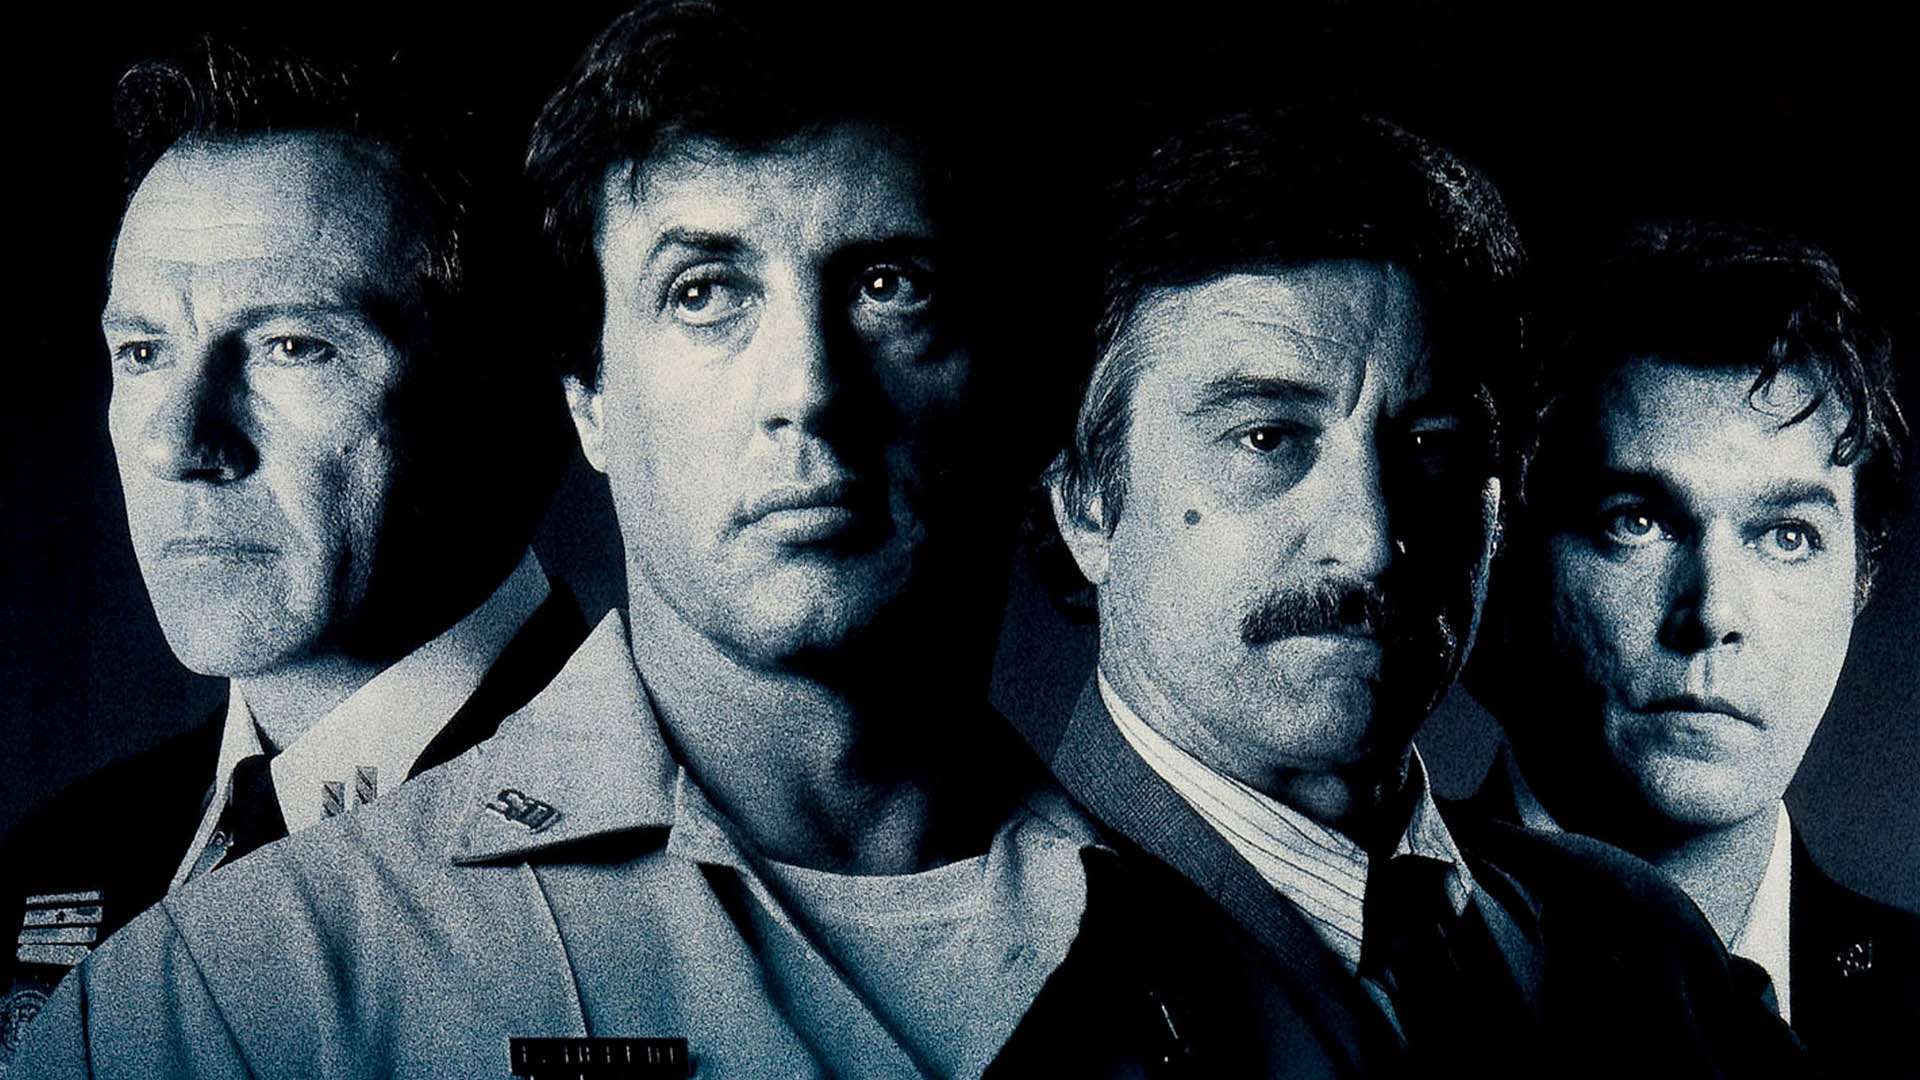 شخصیت های اصلی فیلم Cop Land با حضور رابرت دنیرو و سیلوستر استالونه